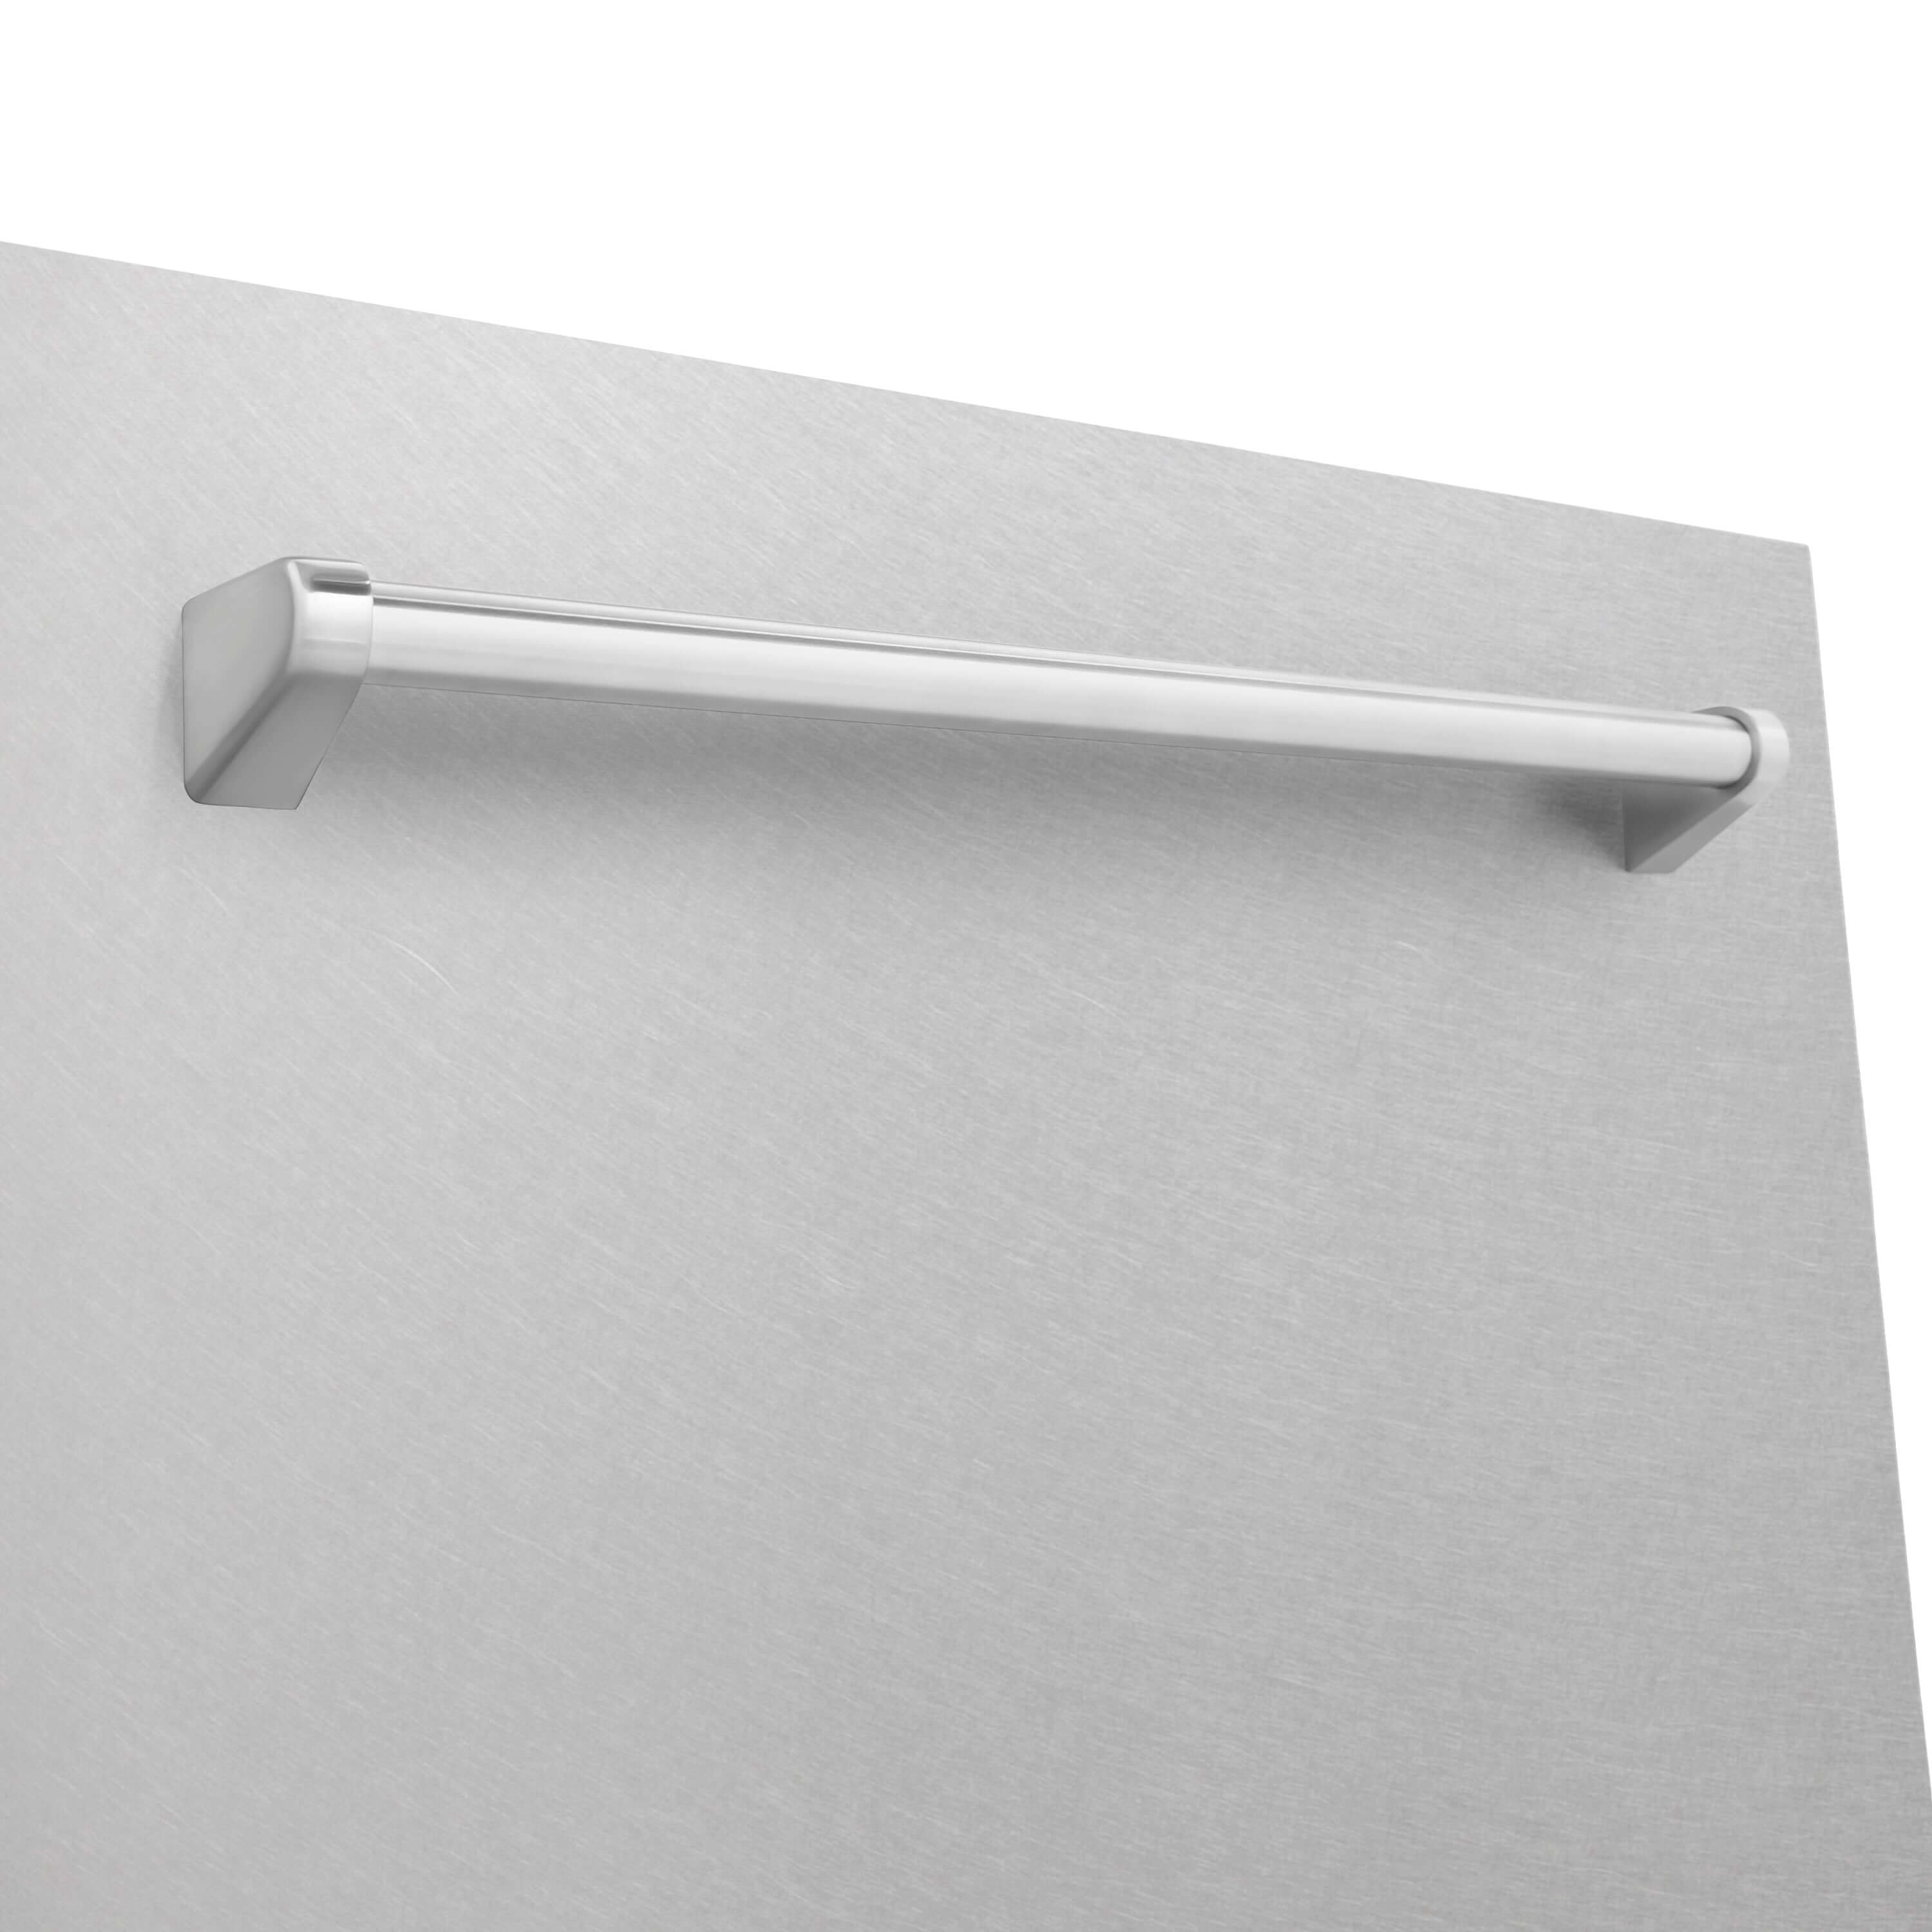 ZLINE 24 in. Monument Dishwasher with DuraSnow Stainless Steel Door (DWMT-SN-24) Handle Detail Close Up